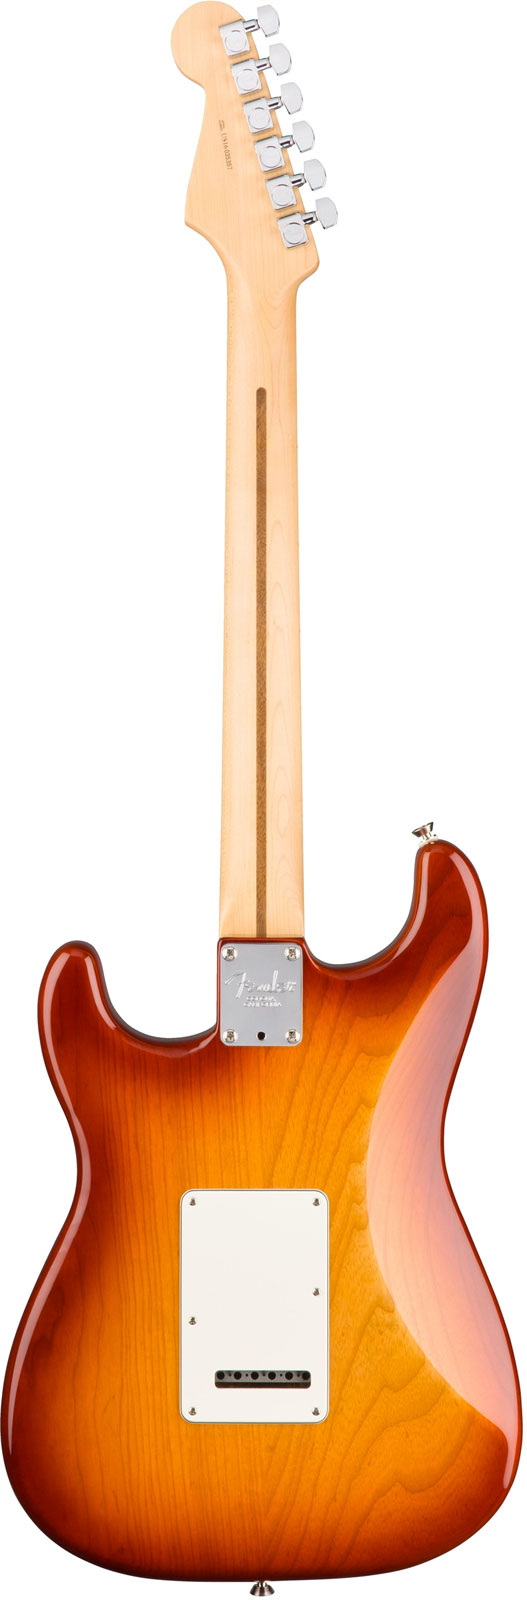 Fender Strat American Professional 2017 3s Usa Mn - Sienna Sunburst - Elektrische gitaar in Str-vorm - Variation 2